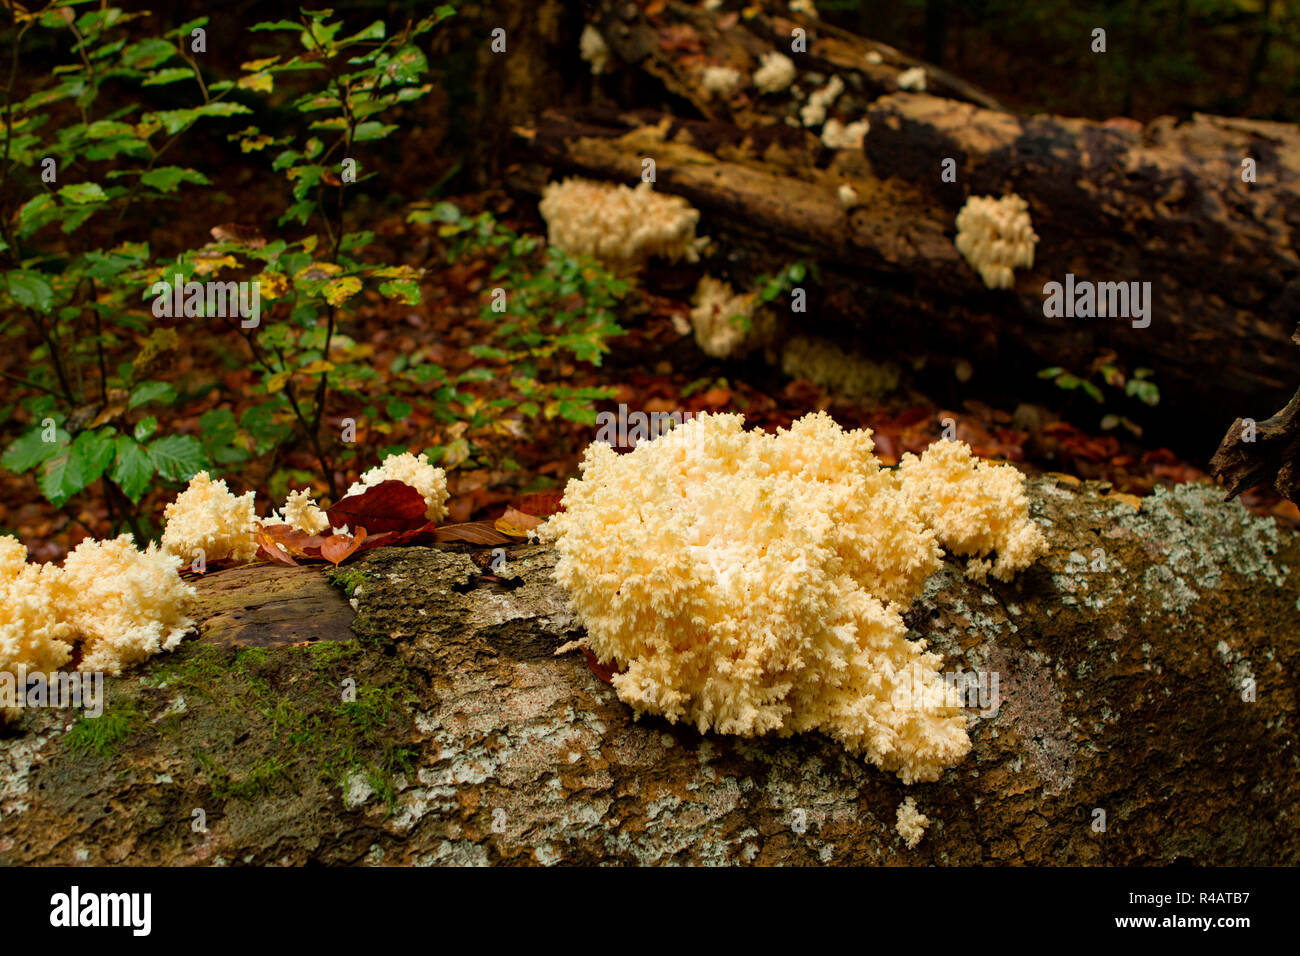 Dent de corail champignon, (Hericium coralloides) Banque D'Images